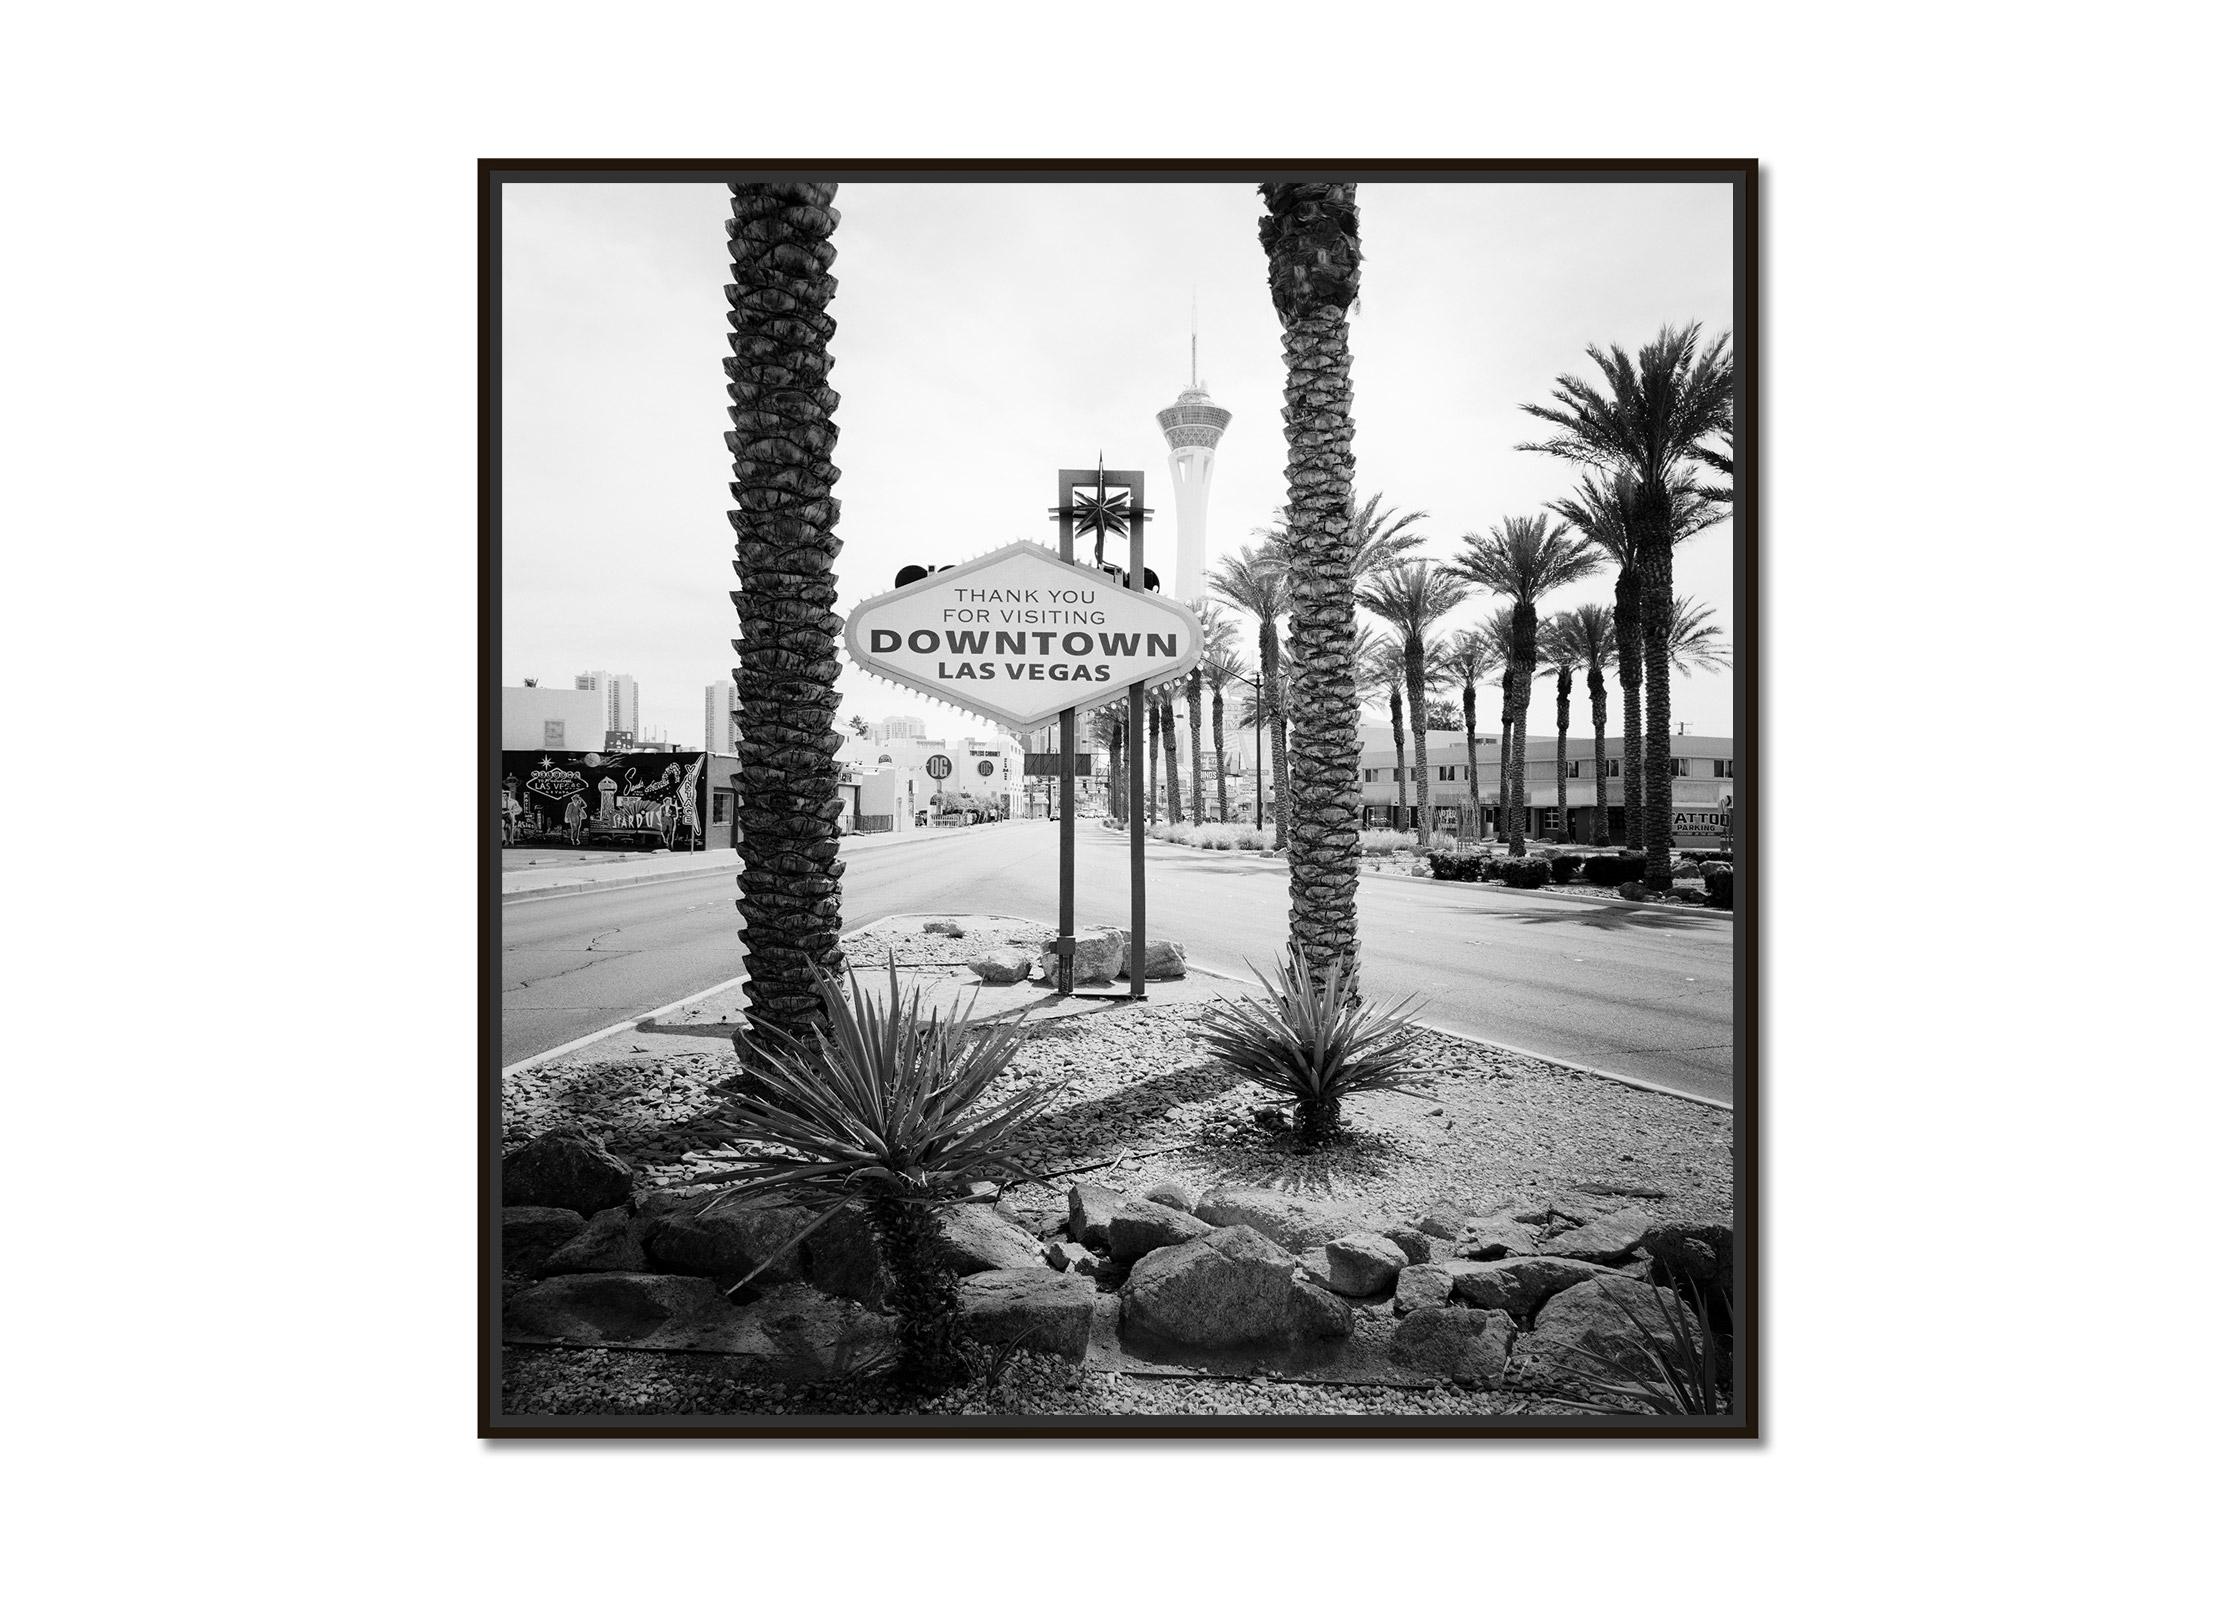 Downtown Las Vegas, Nevada, USA – zeitgenössischer Schwarz-Weiß-Landschaftsdruck – Photograph von Gerald Berghammer, Ina Forstinger